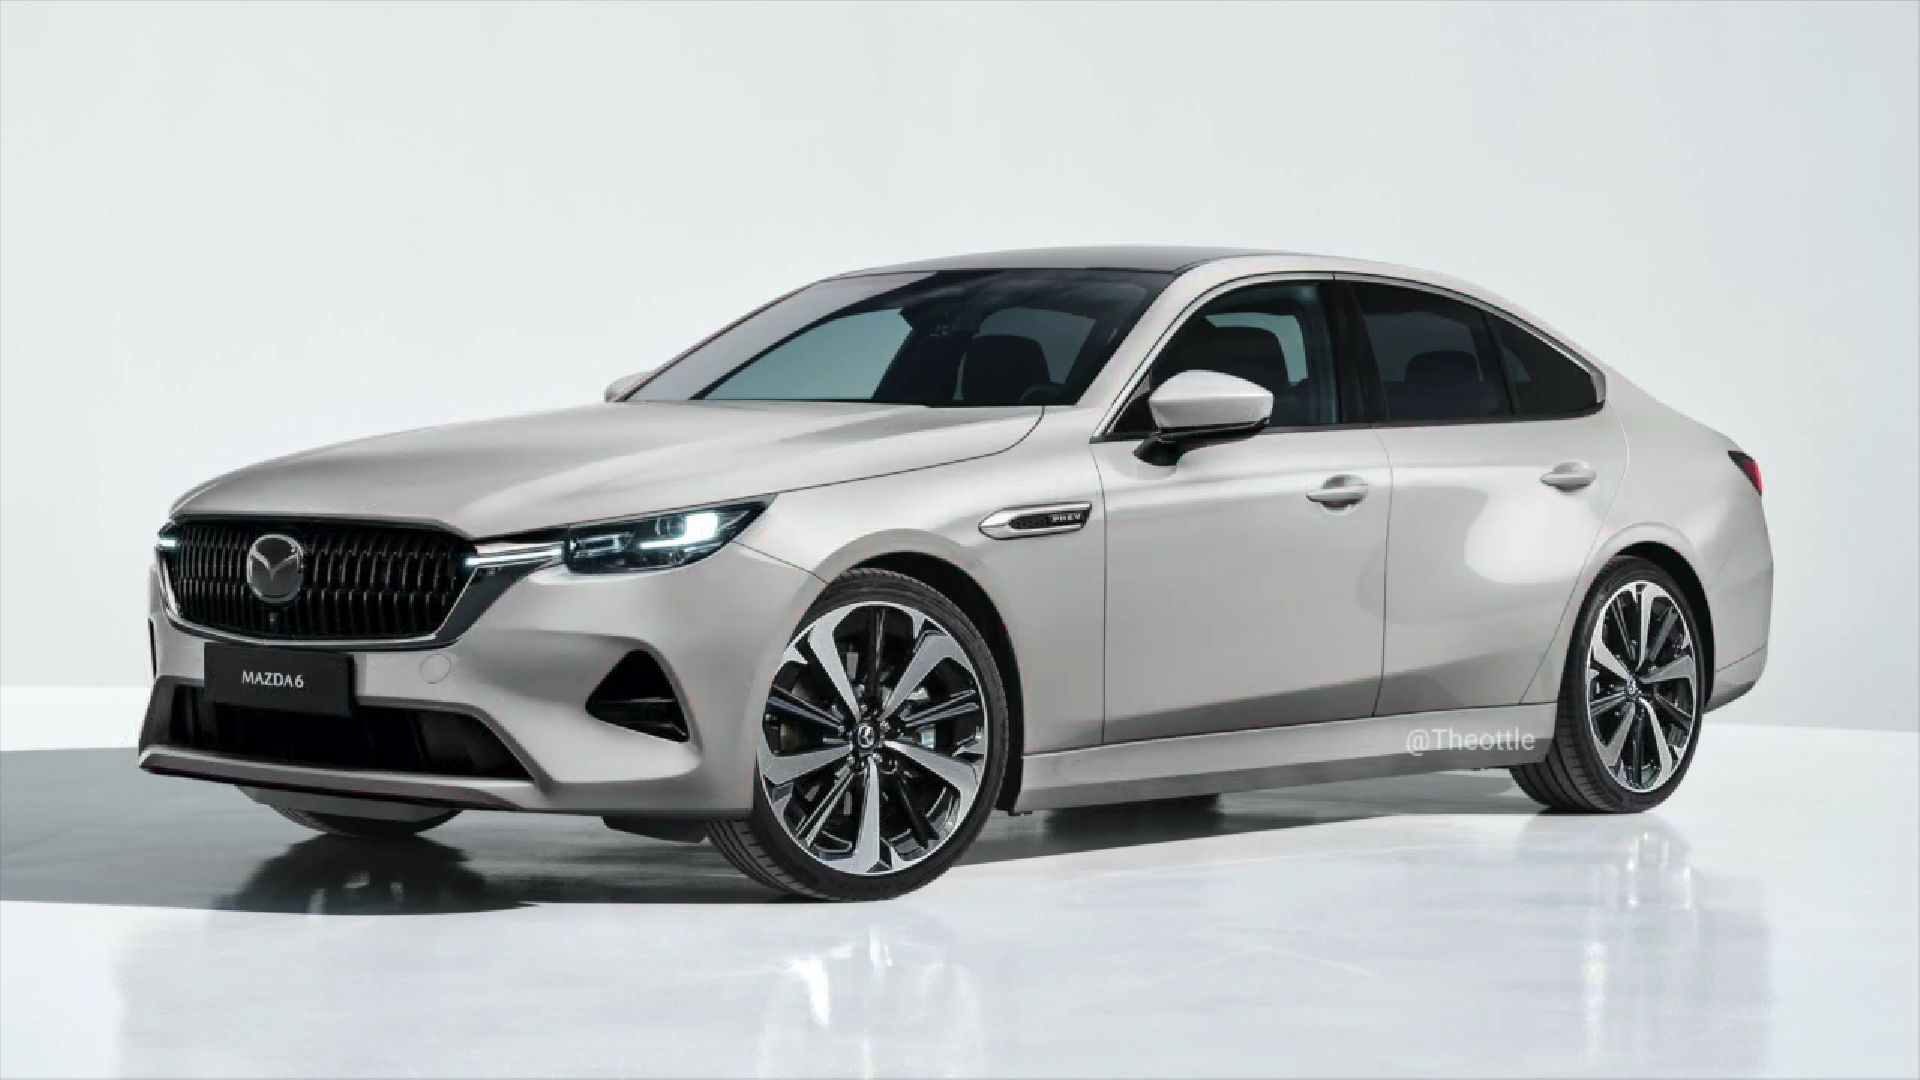 Lộ diện bản phác thảo Mazda6 thế hệ mới lịch lãm hơn hẳn bản hiện tại